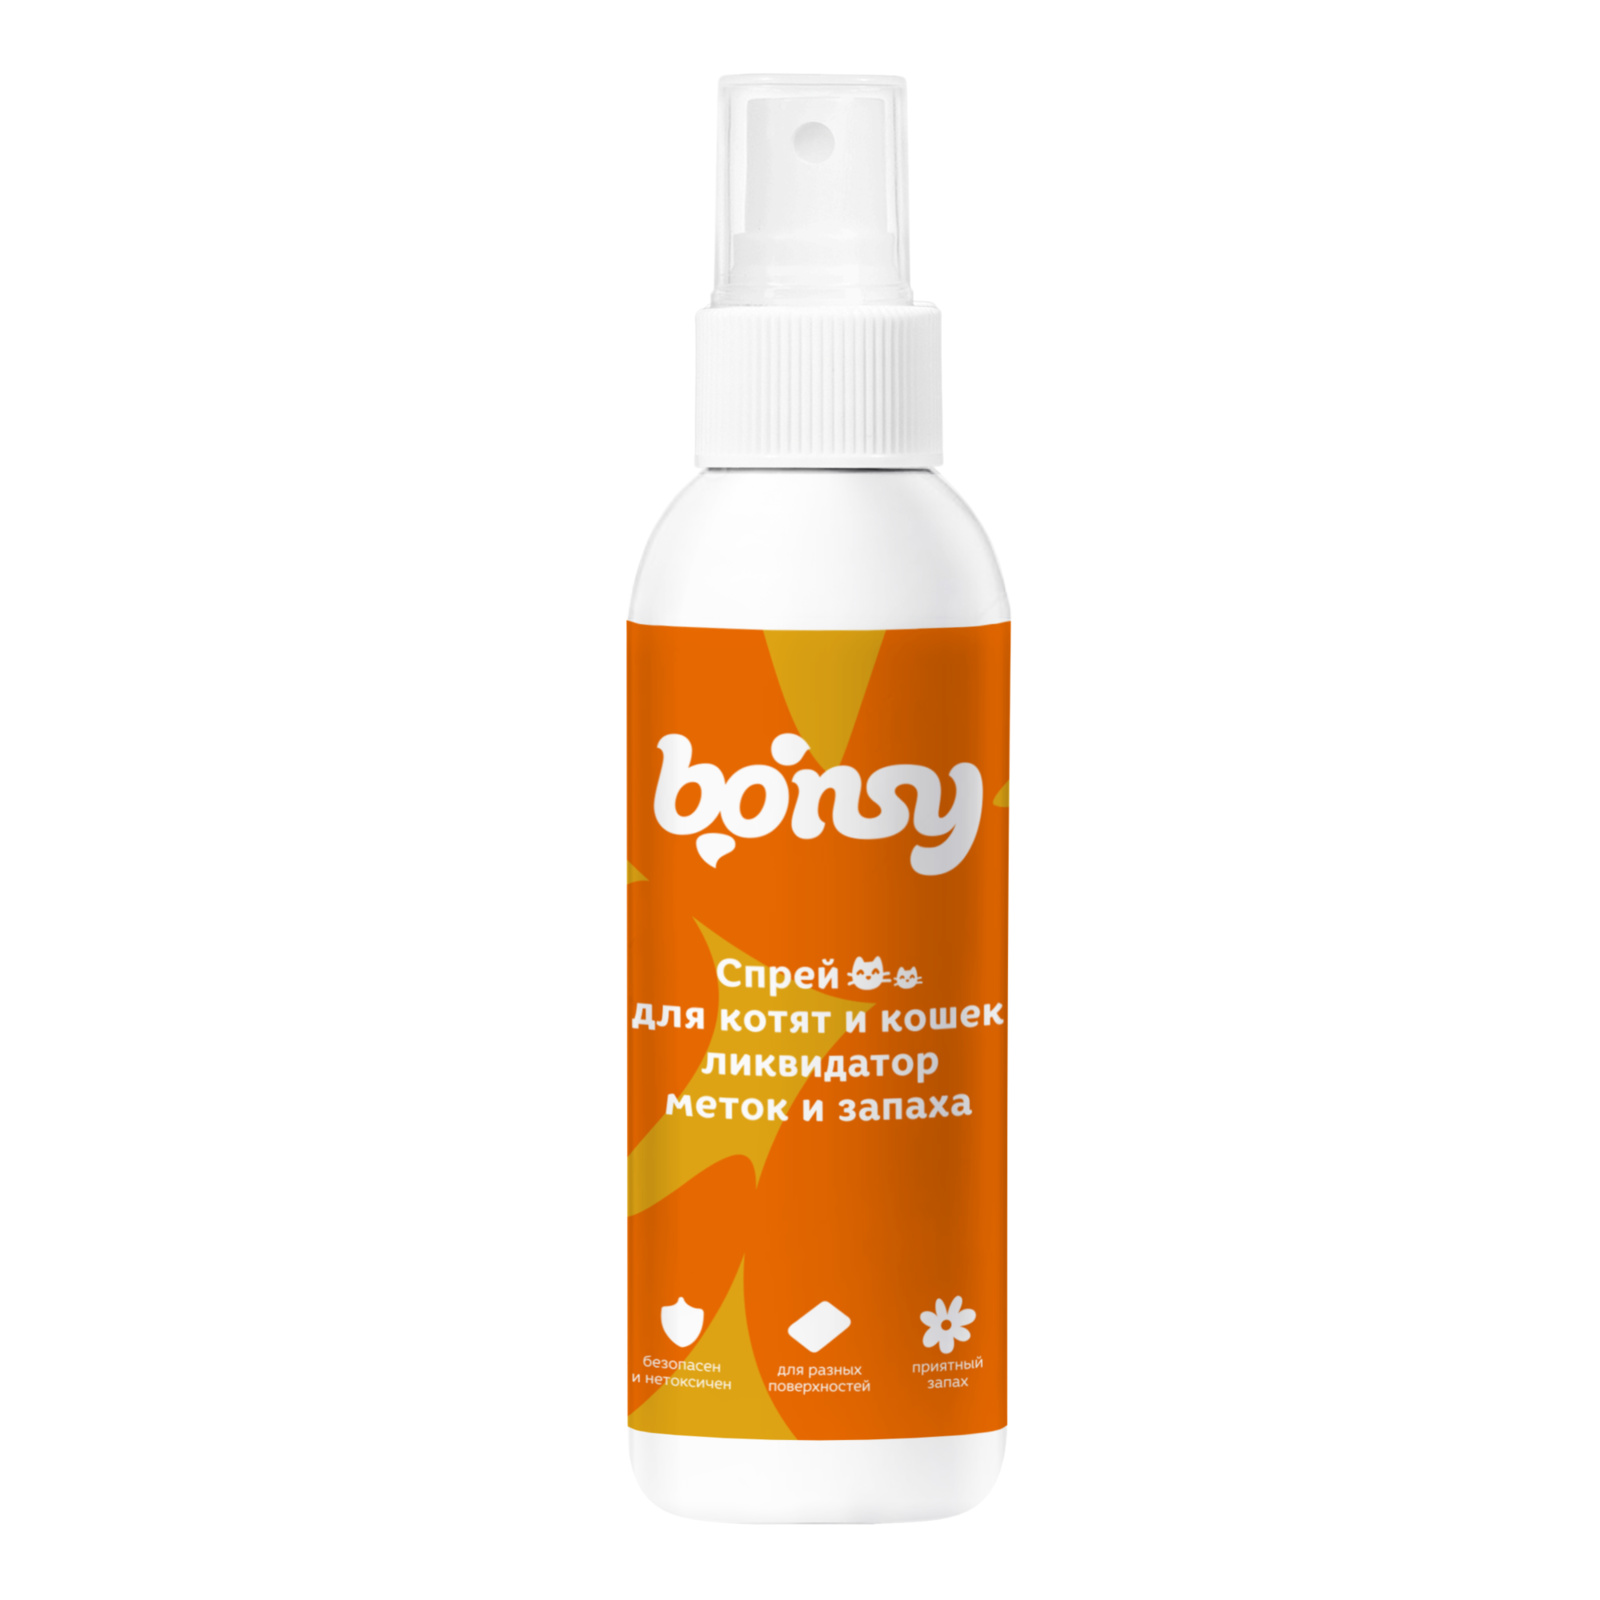 Bonsy Bonsy спрей «Ликвидатор меток и запаха» для кошек и котят (150 г) bonsy bonsy антипаразитарный биоошейник для котят и кошек яблочная нежность 30 г